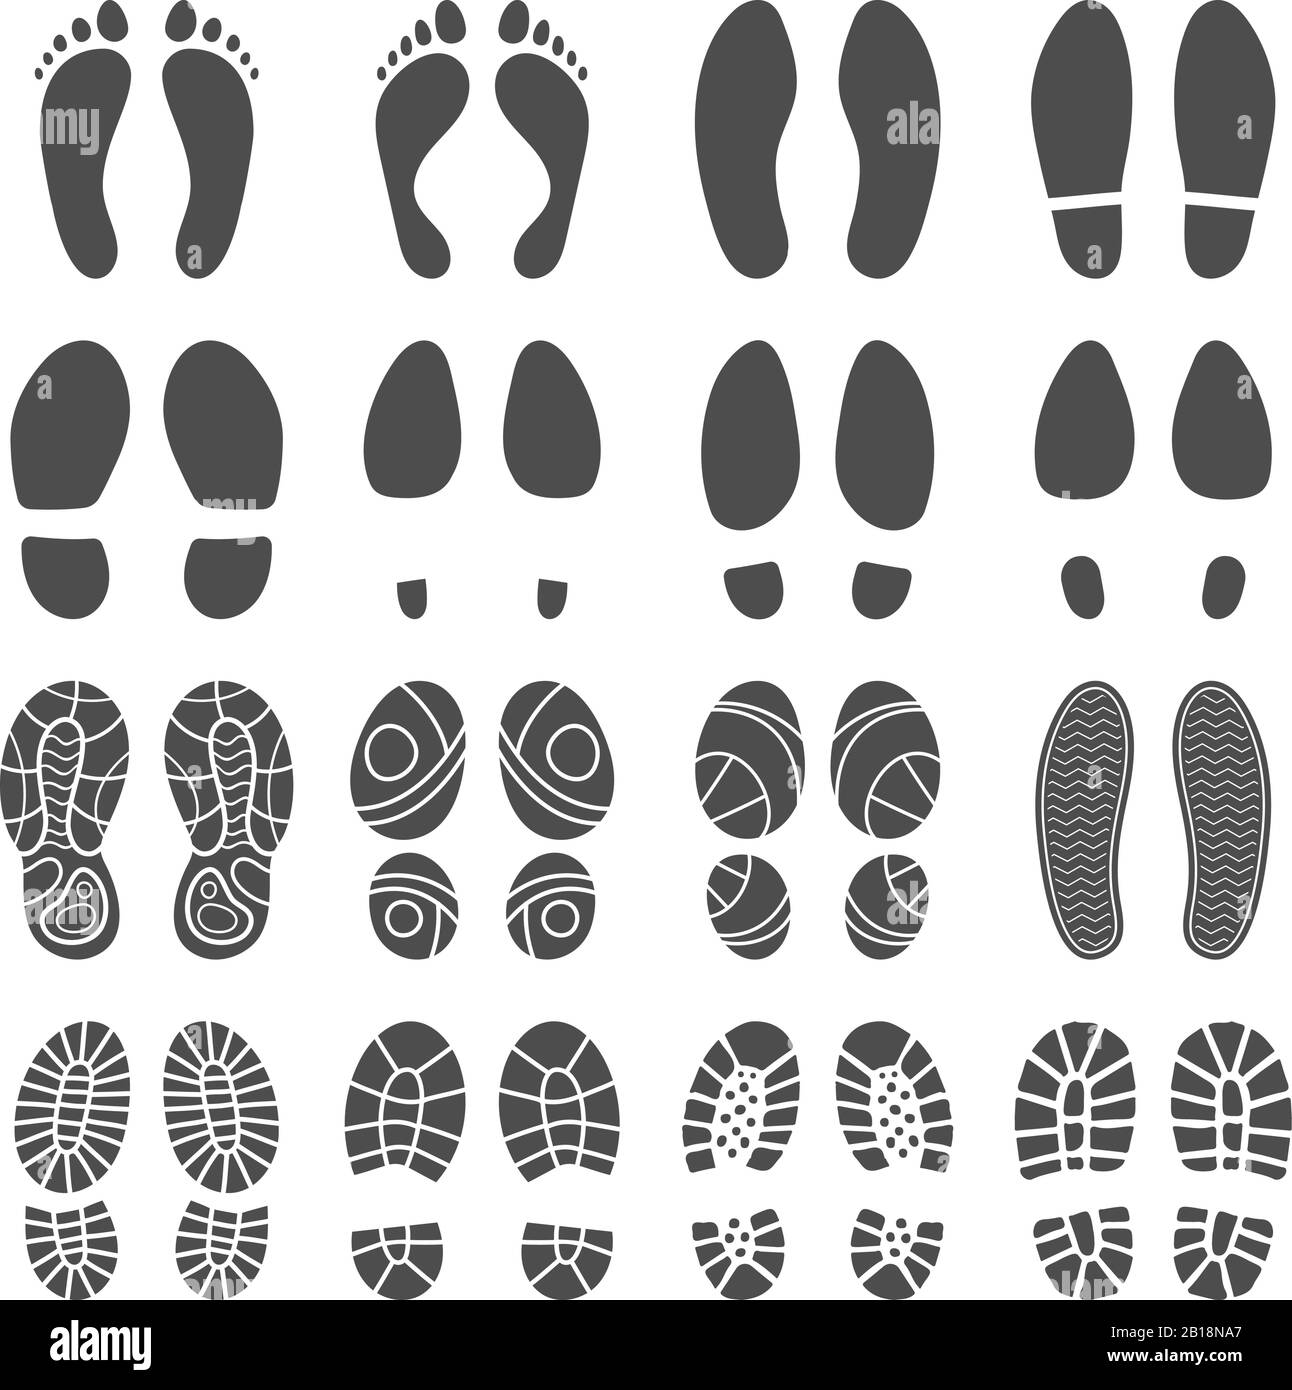 Sagome delle impronte. Stampe a gradini a piedi nudi, stivali STEP e piedi stampa immagine della silhouette vettoriale isolata Illustrazione Vettoriale